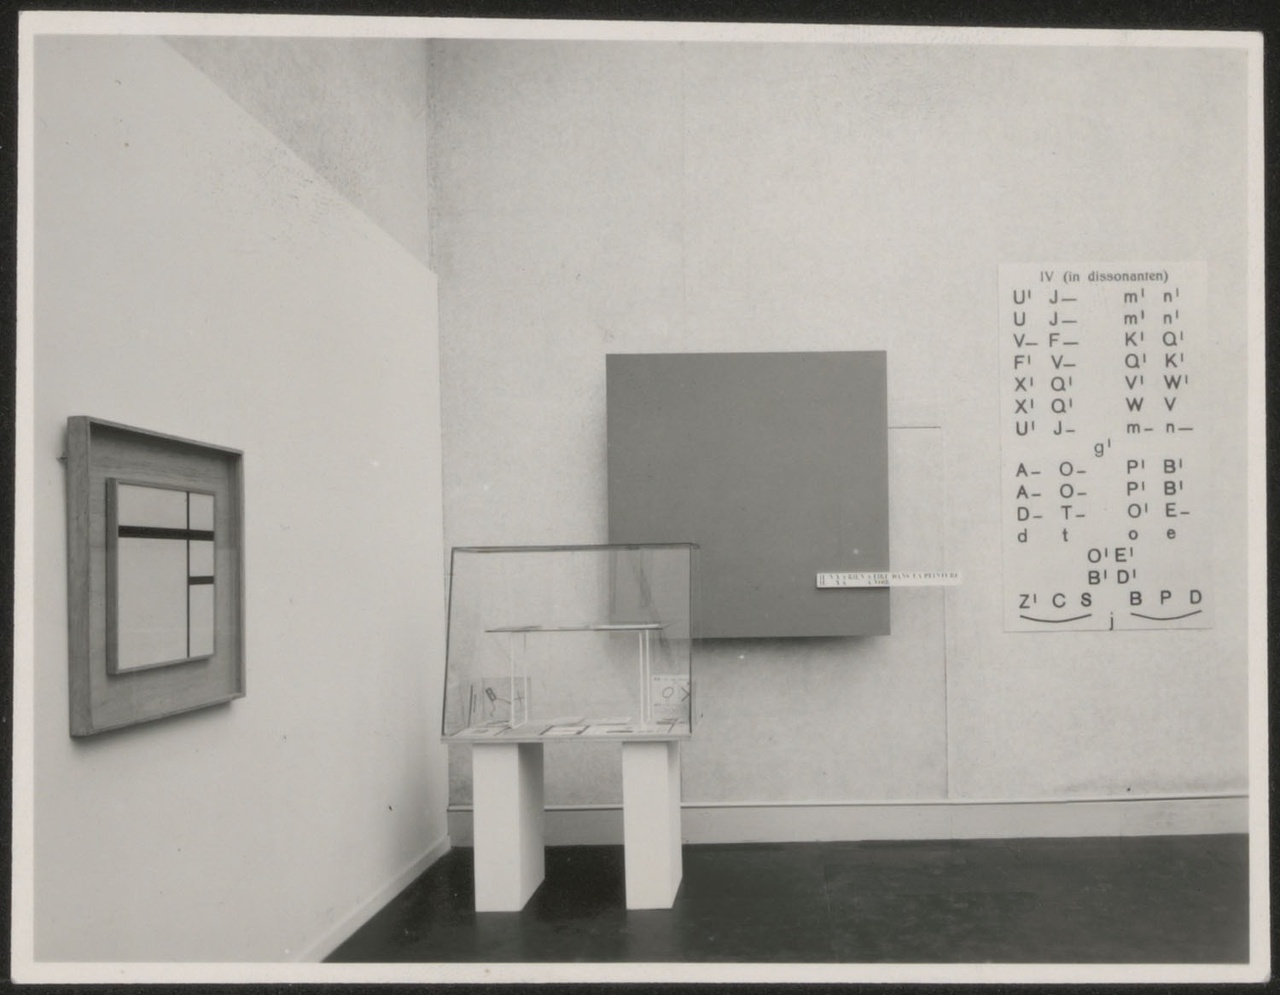 Afbeelding van tentoonstelling De Stijl SMA, 1951, hoek zaal 4 met vitrine